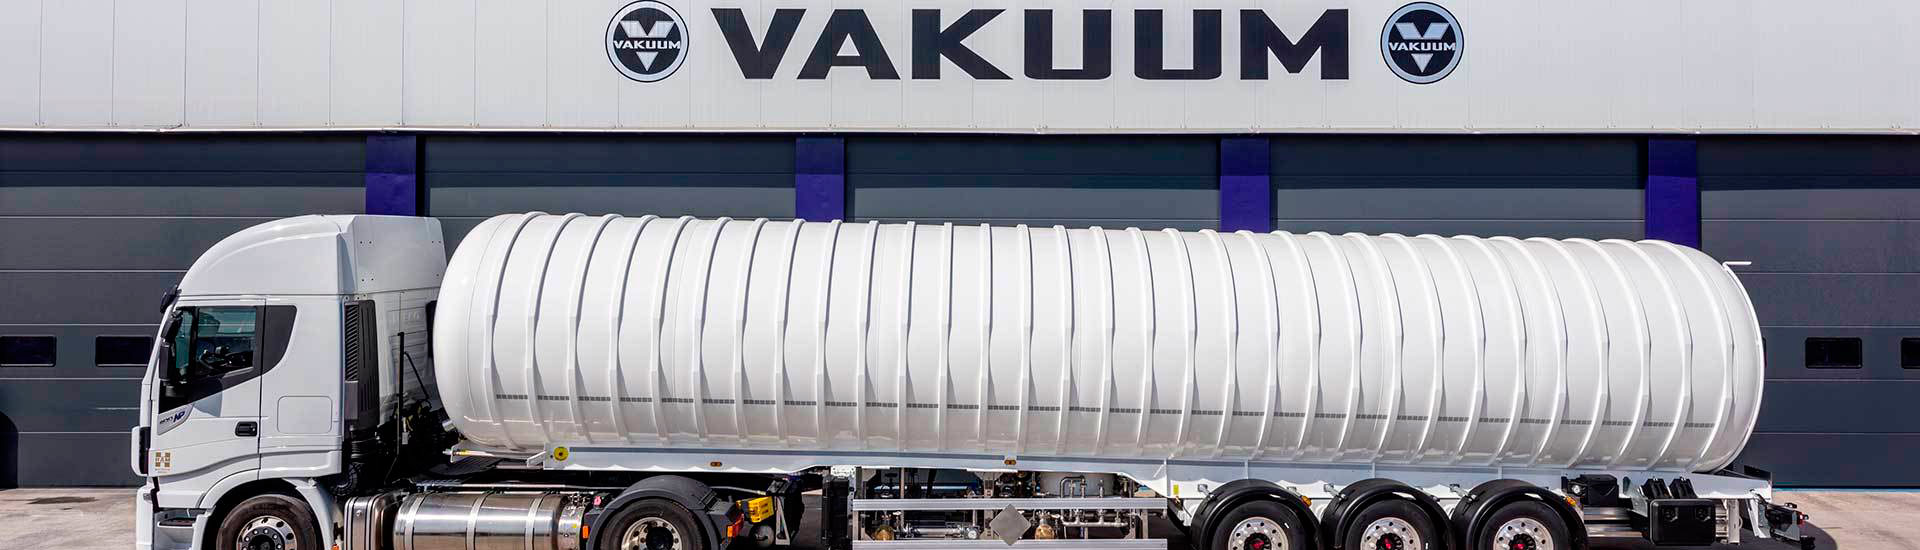 Vakuum, líder en el diseño y fabricación de semitrailers y unidades móviles para transporte de GNL y gases del aire LIN - LOX - LAR